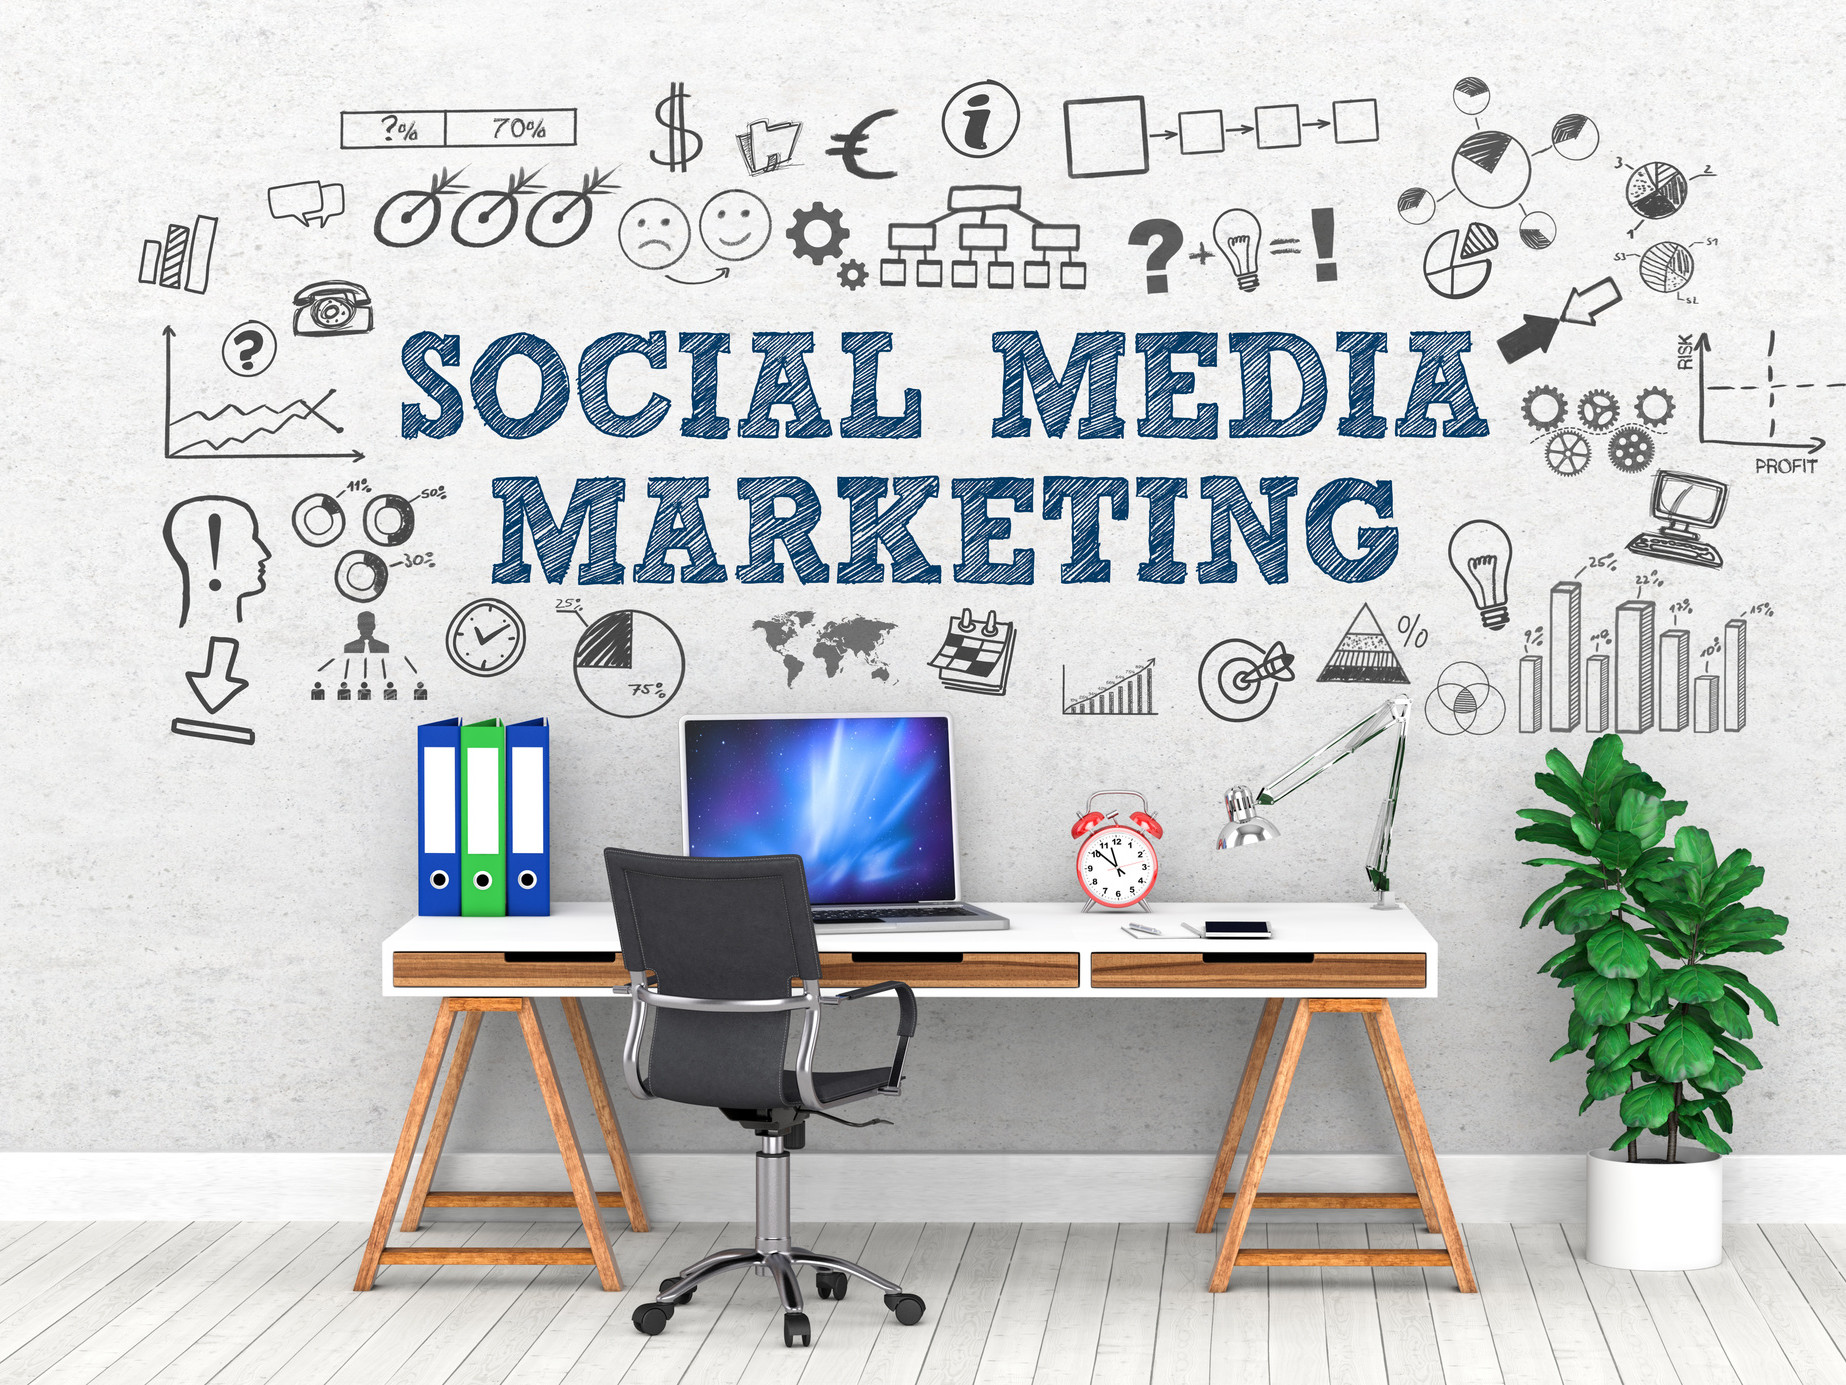 social media marketing ideas